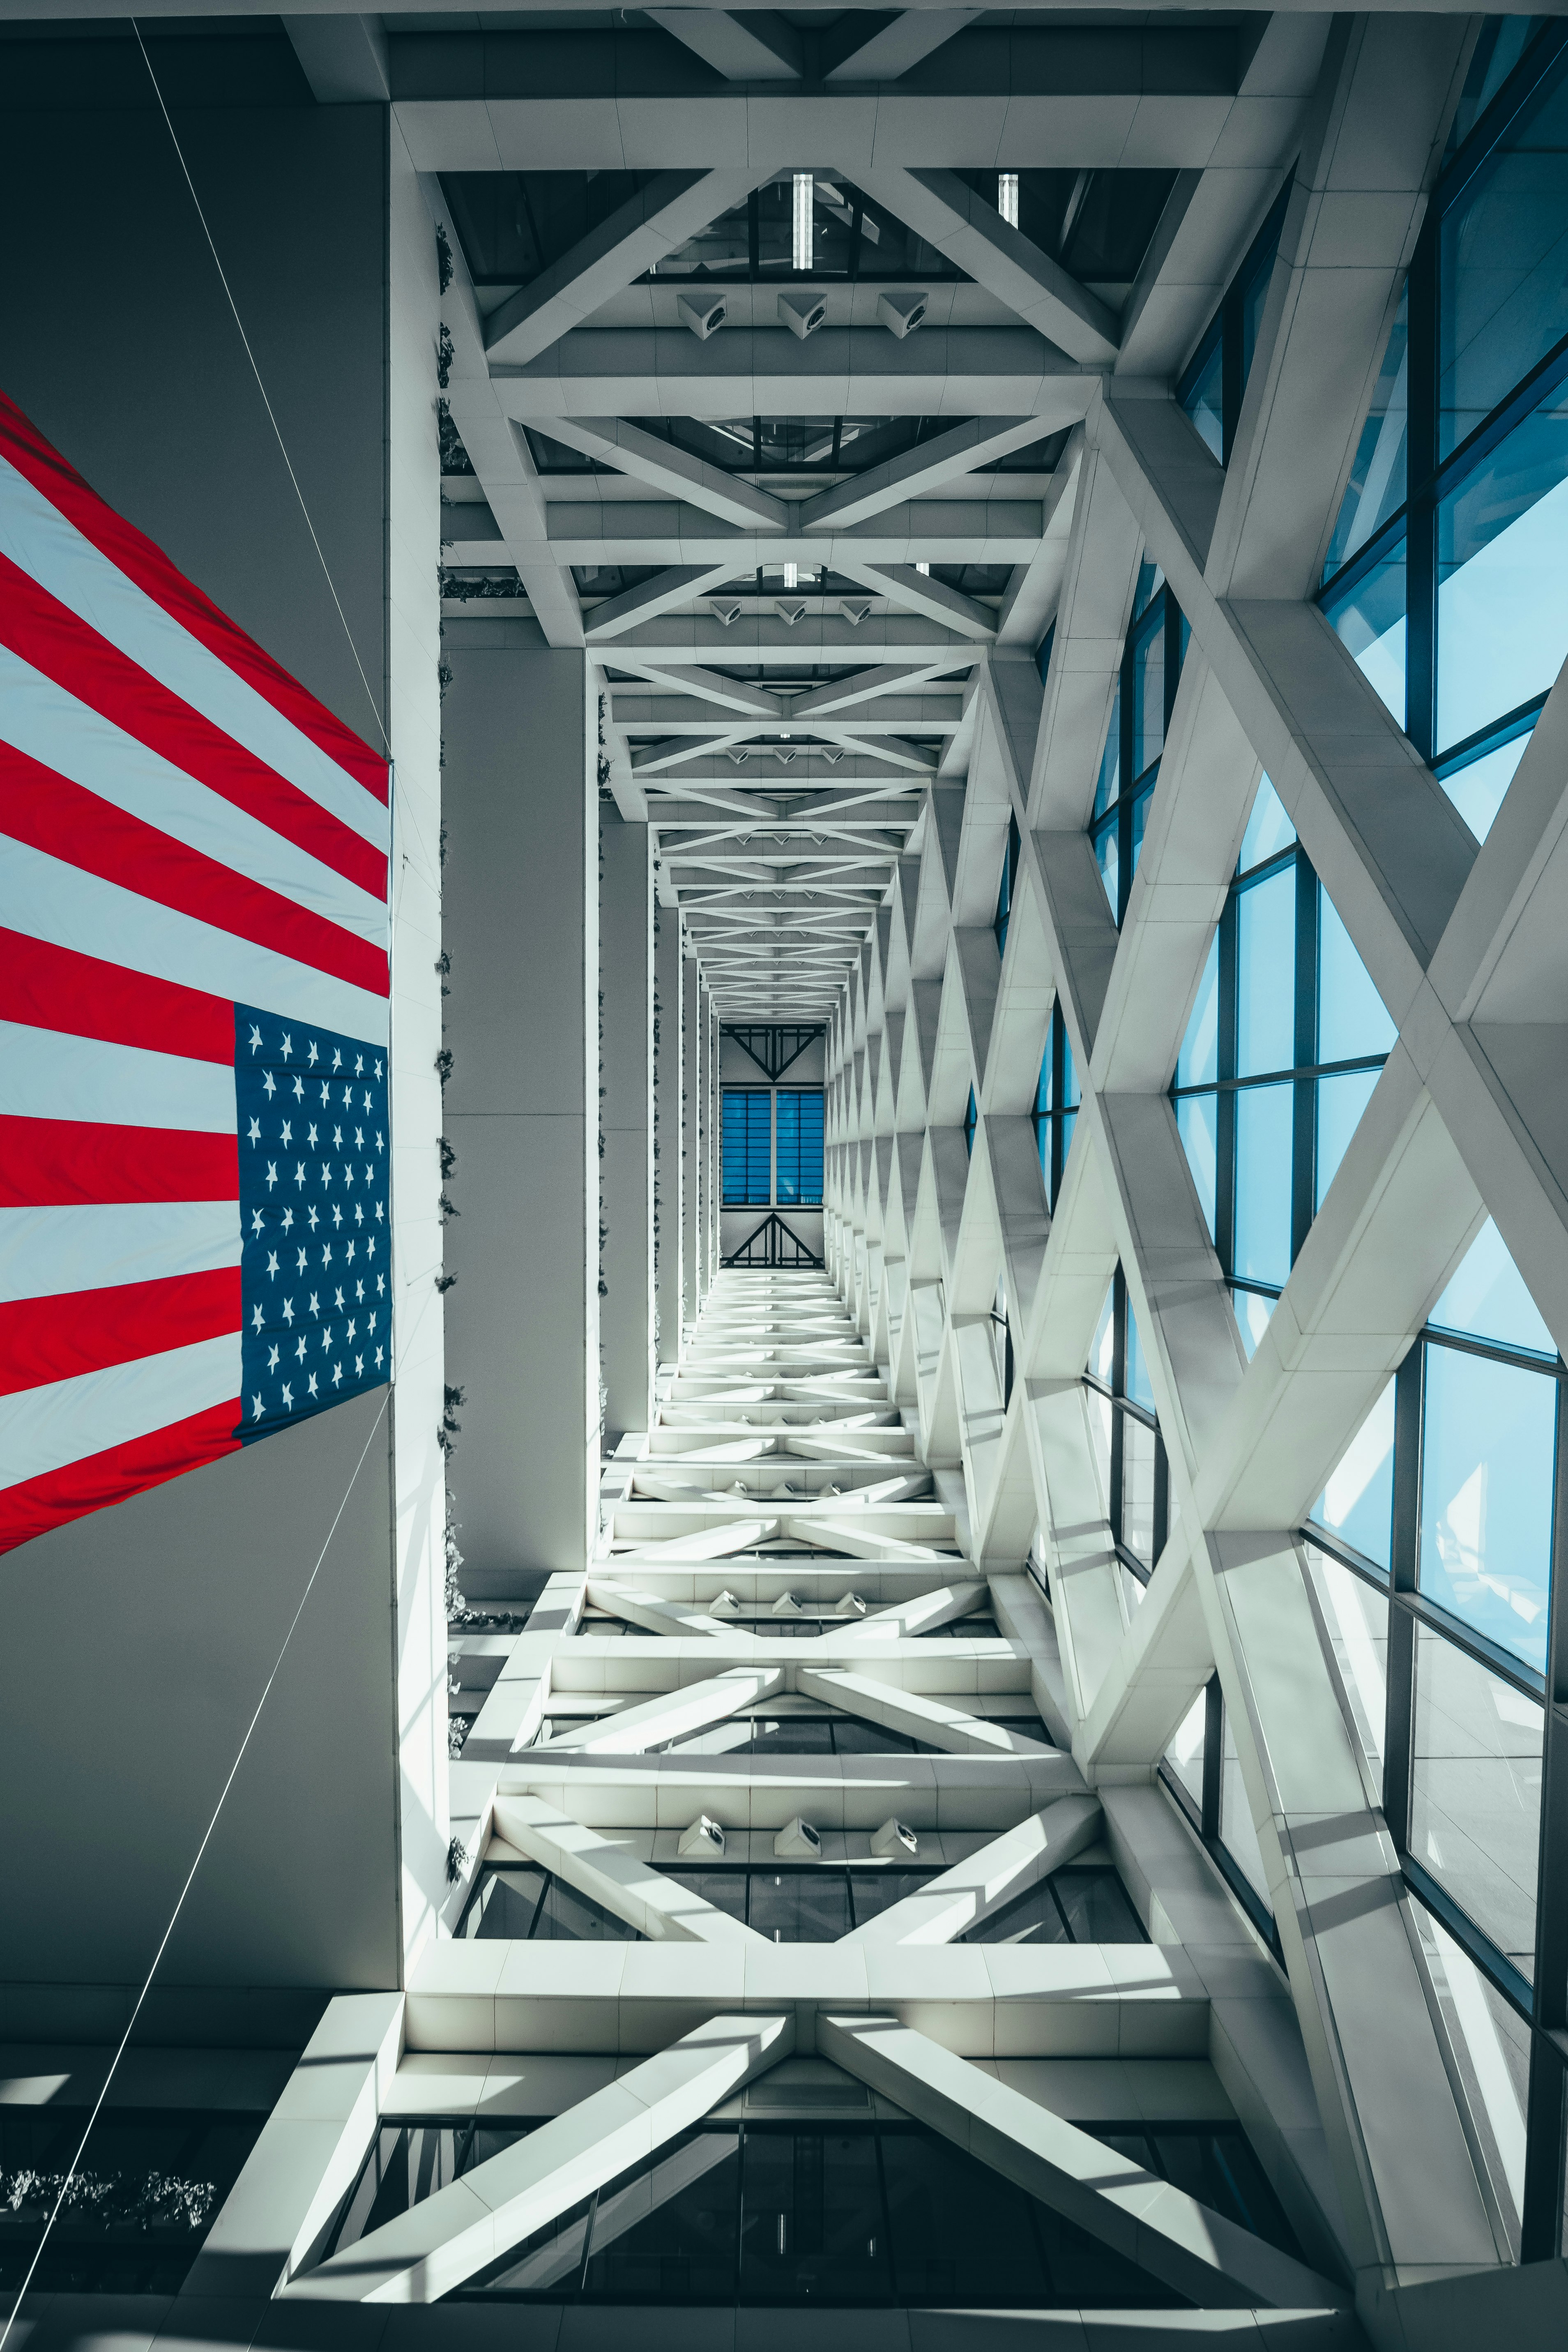 USA flag hanging inside building